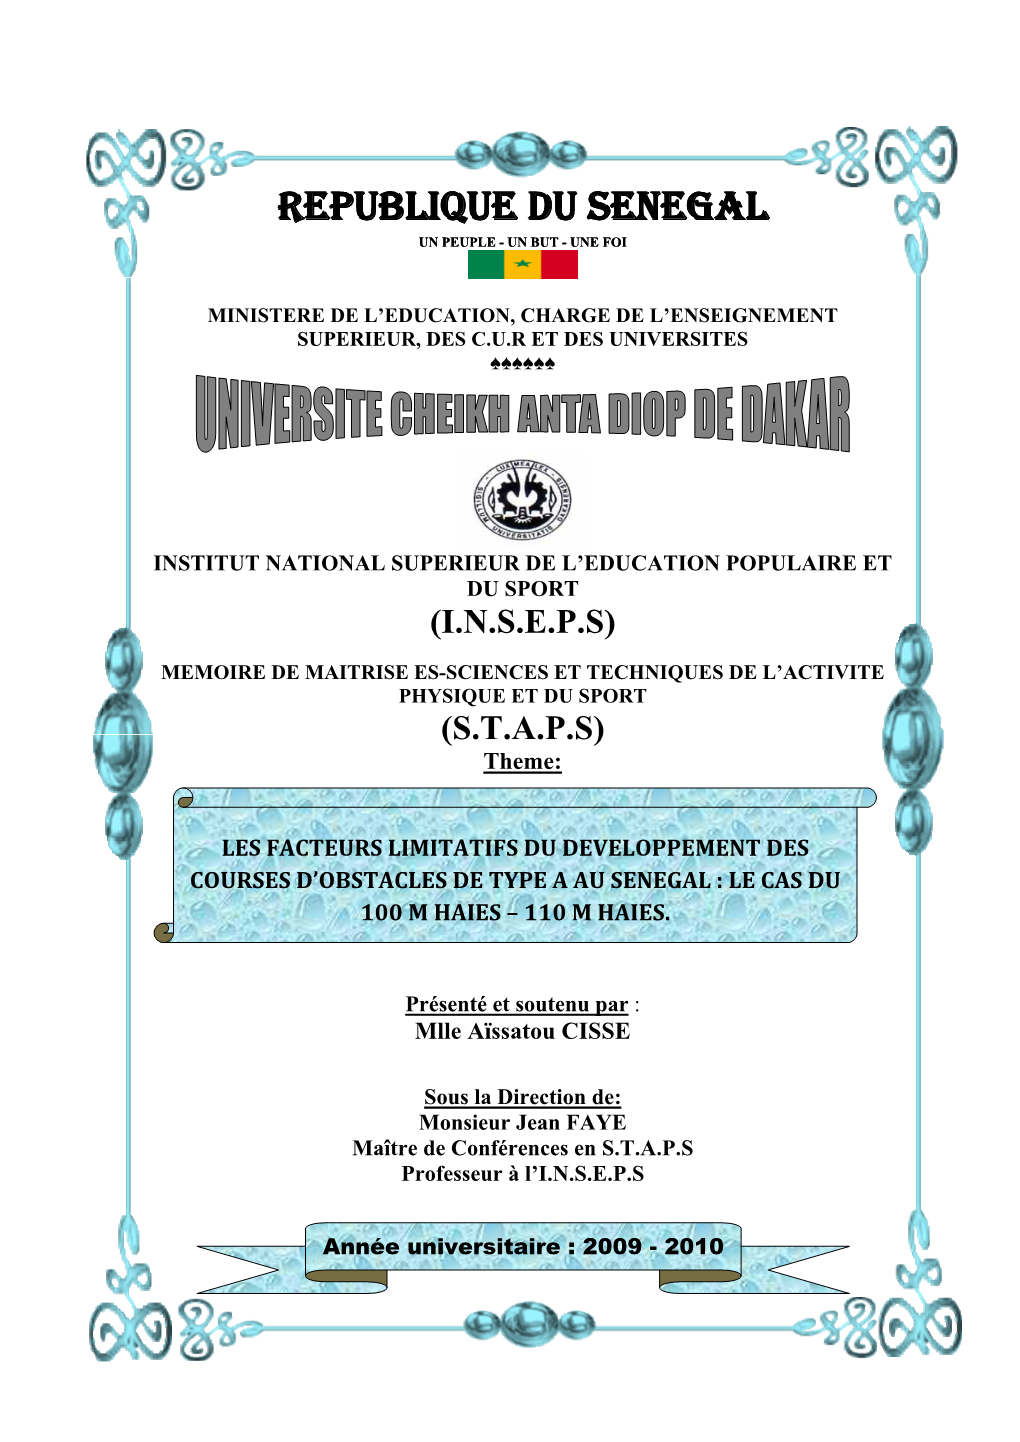 Les Facteurs Limitatifs Du Développement Des Courses D'obstacles De Type a Au Sénégal : Le Cas Du 100 M Haies